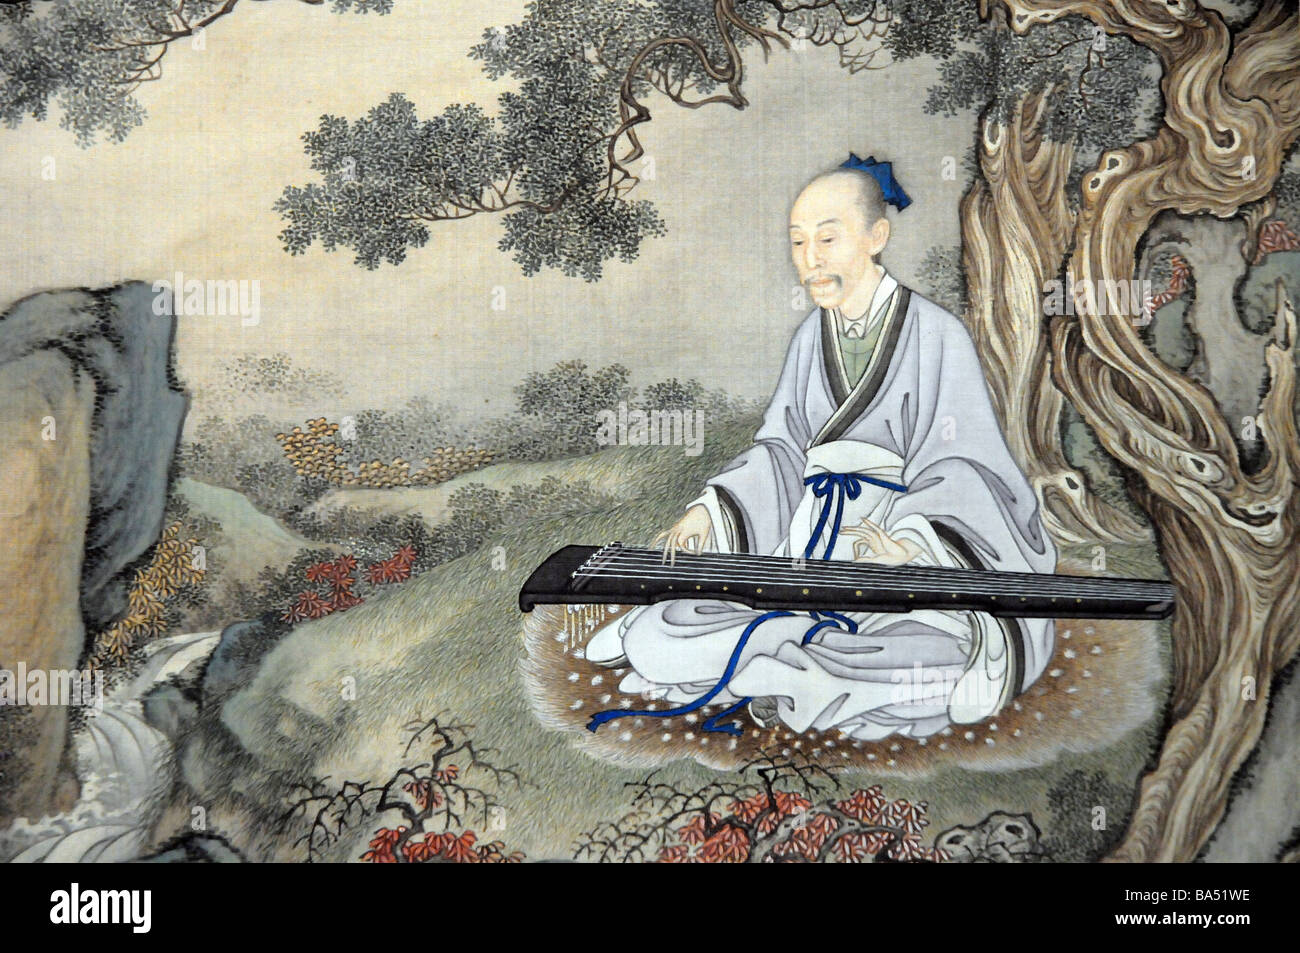 Peinture chinoise ancienne de l'homme sage jouant un Guqin - un 7-cordes cithare, l'instrument de musique chinois plus classique. Banque D'Images